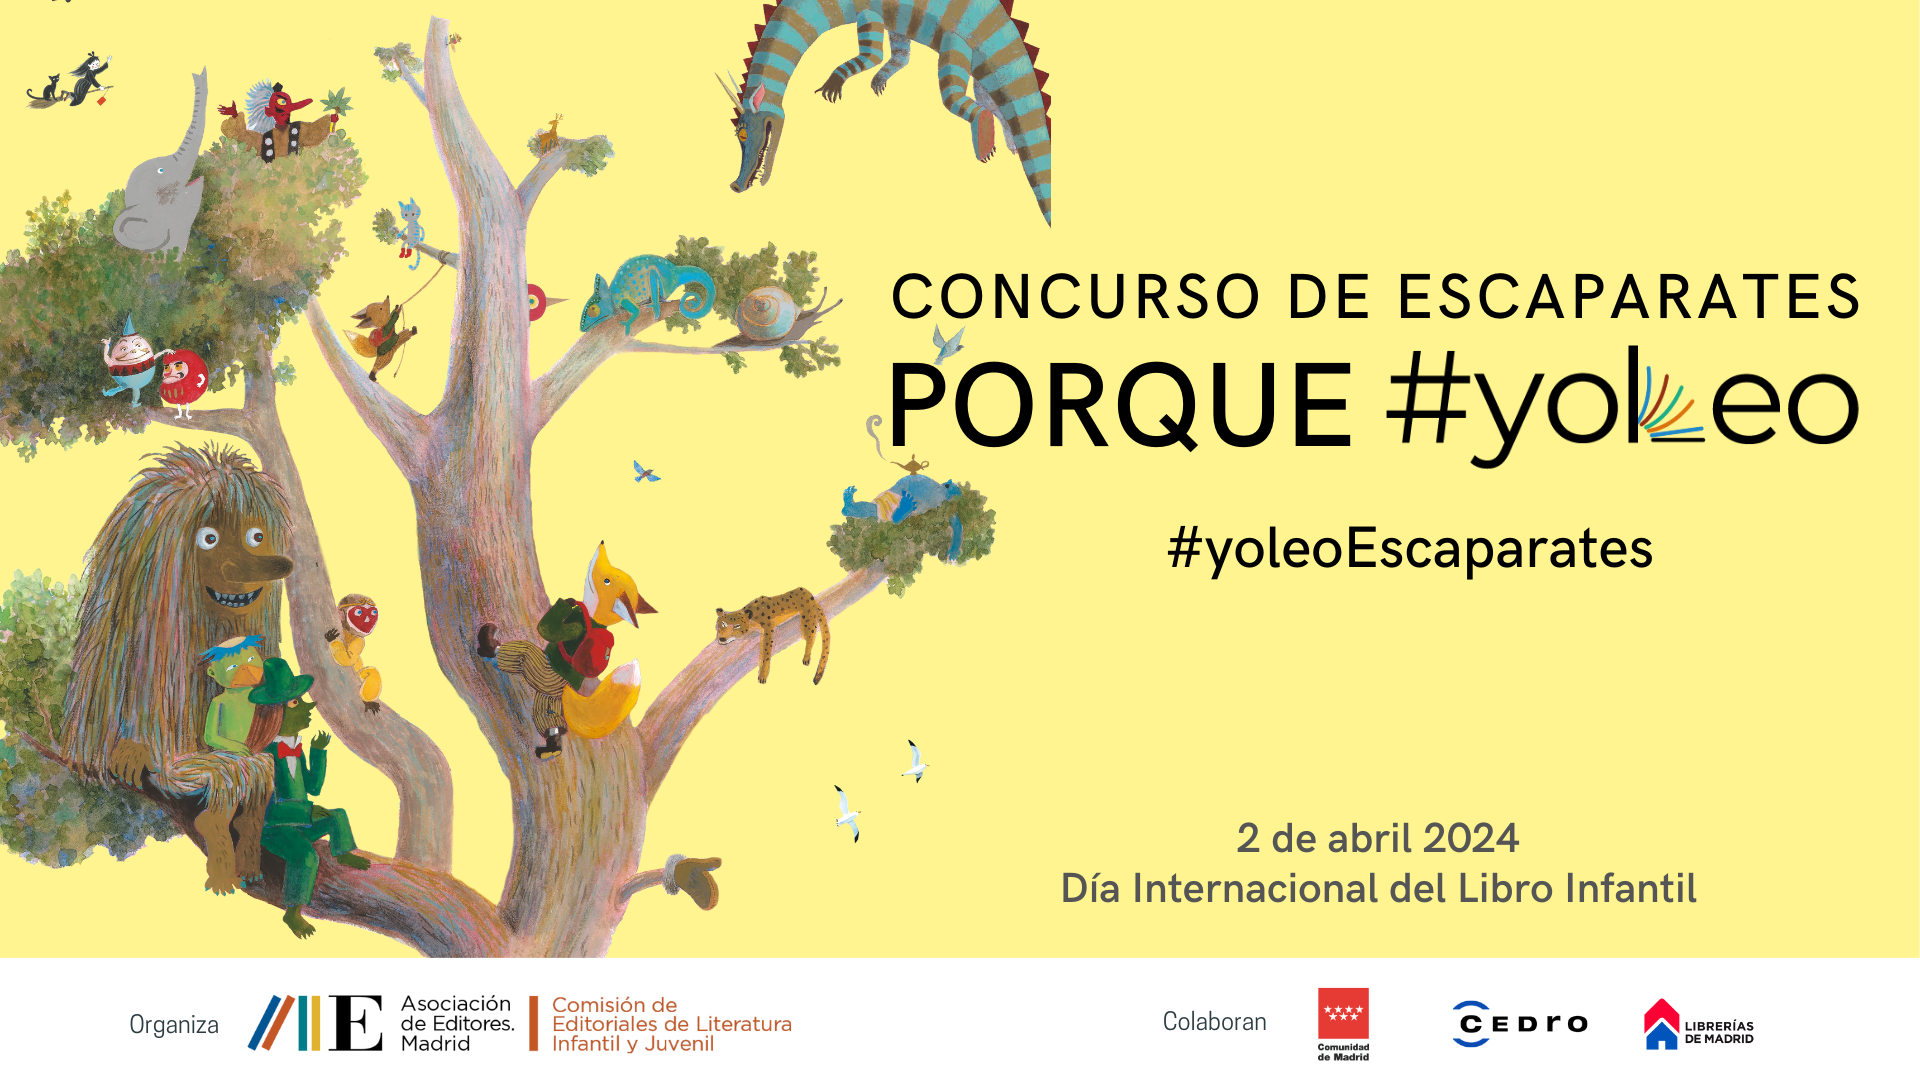 Día Internacional del Libro Infantil. Arranca la cuarta edición del Concurso de Escaparates PORQUE #YOLEO de la Asociación de Editores de Madrid